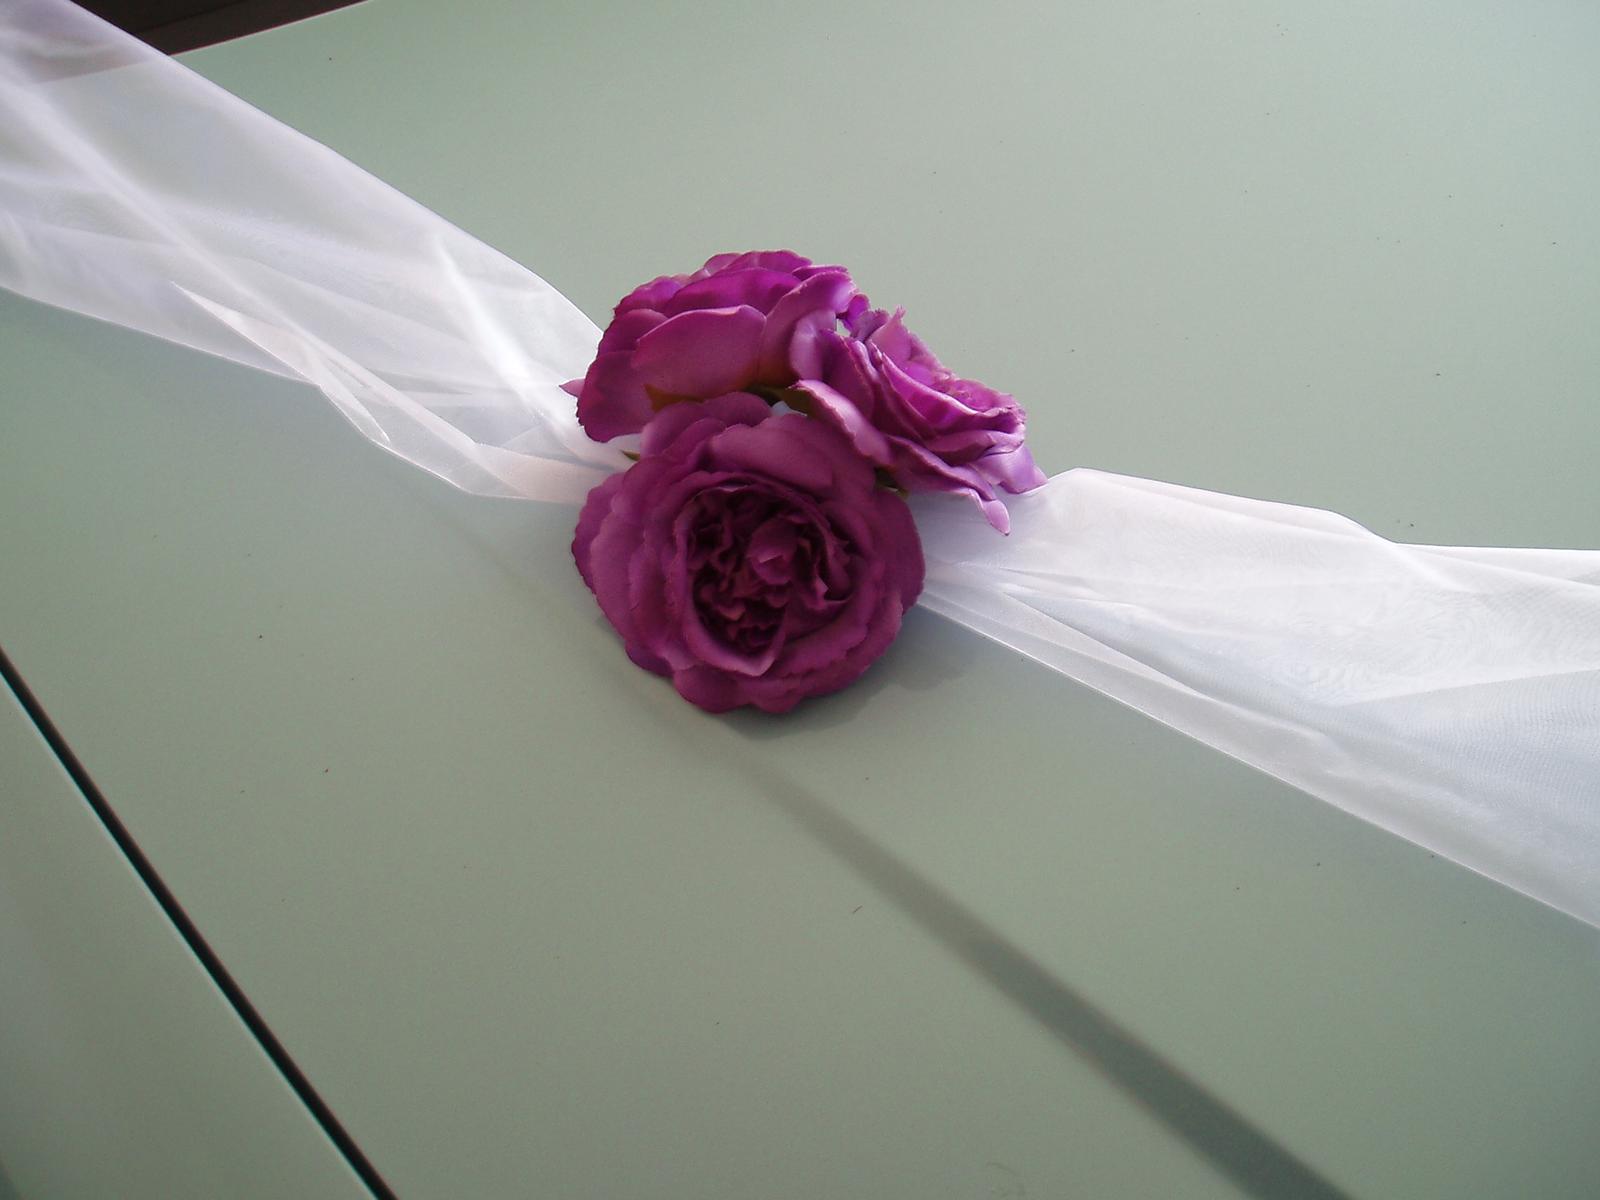 šerpa fialové růže - Obrázek č. 3